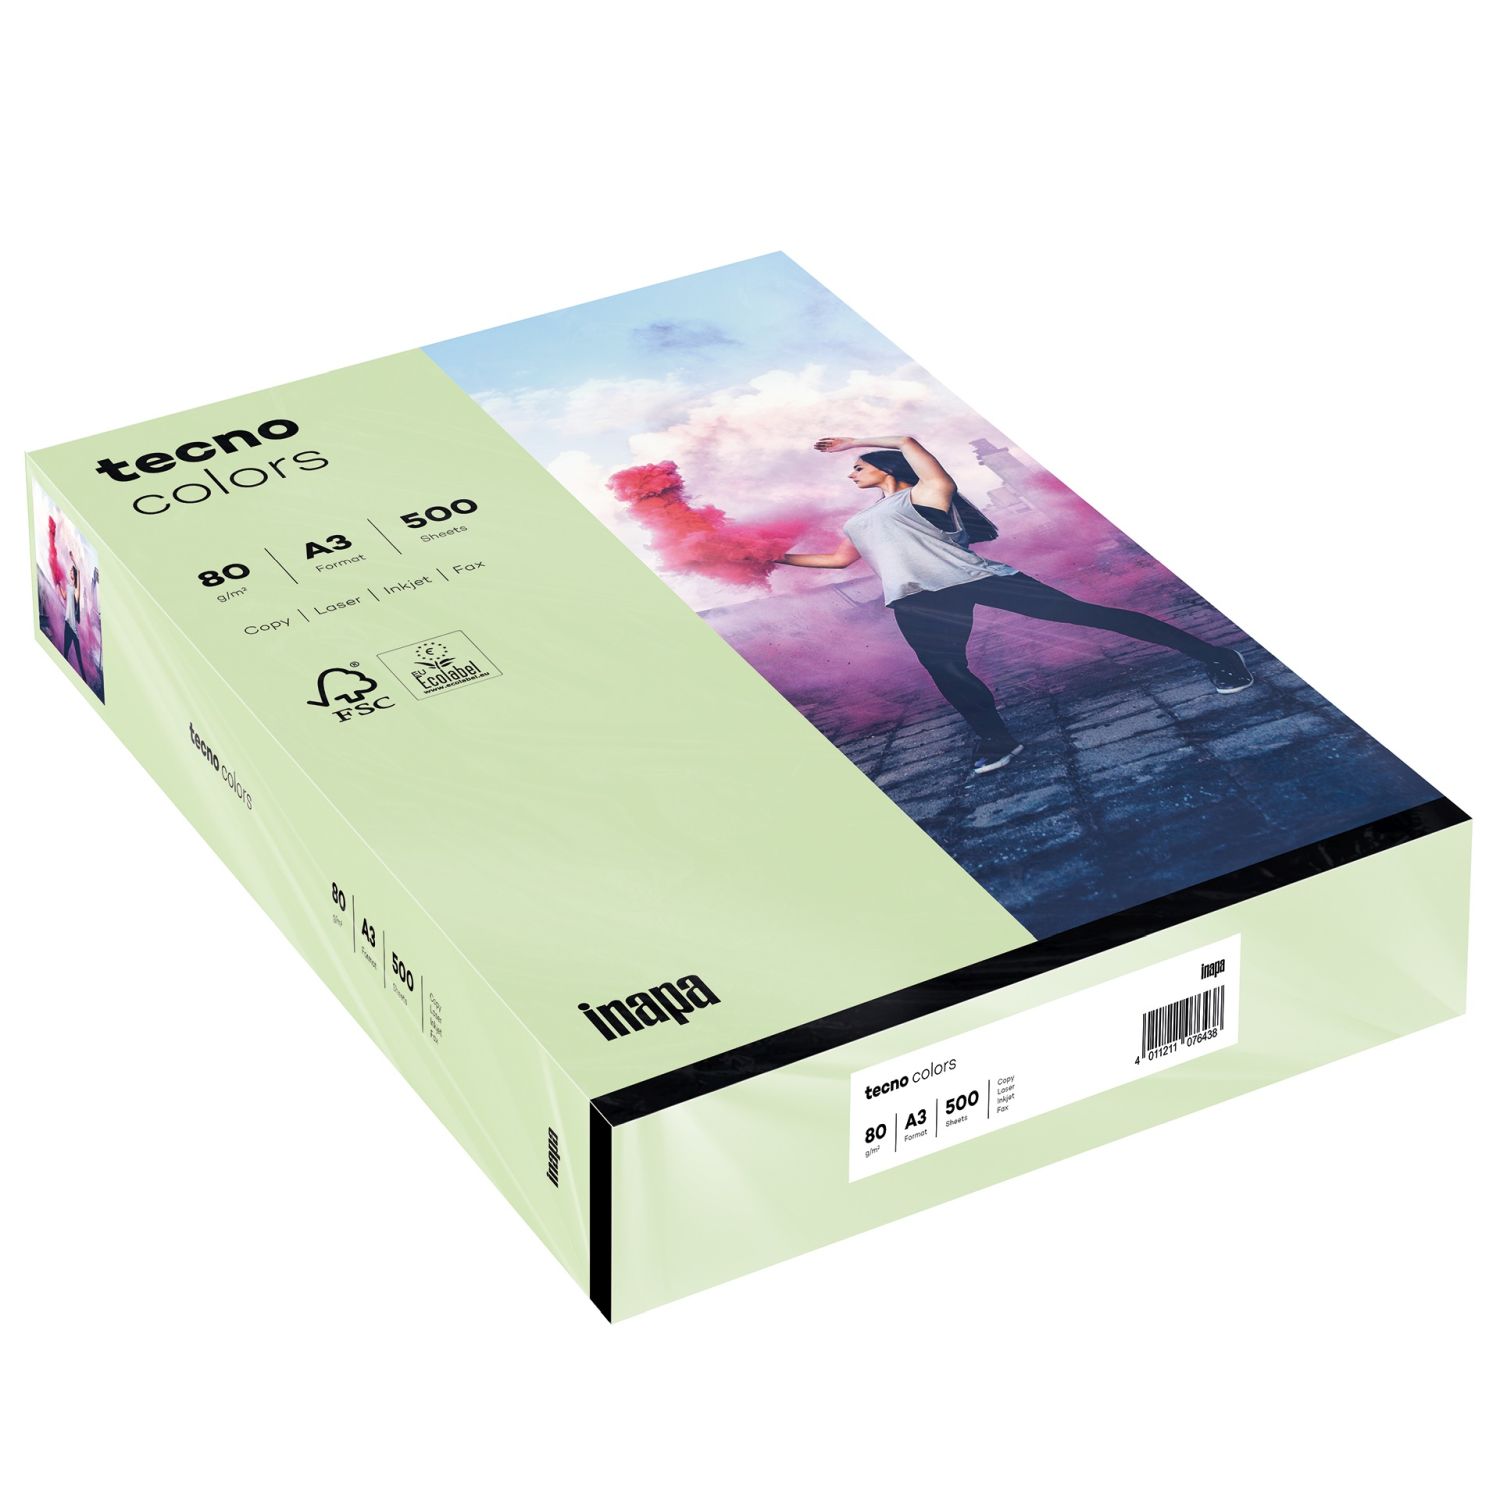 Kopierpapier Inapa tecno® colors 2100011443 DIN A3, 80 g/qm, mittelgrün, pastell, 500 Blatt